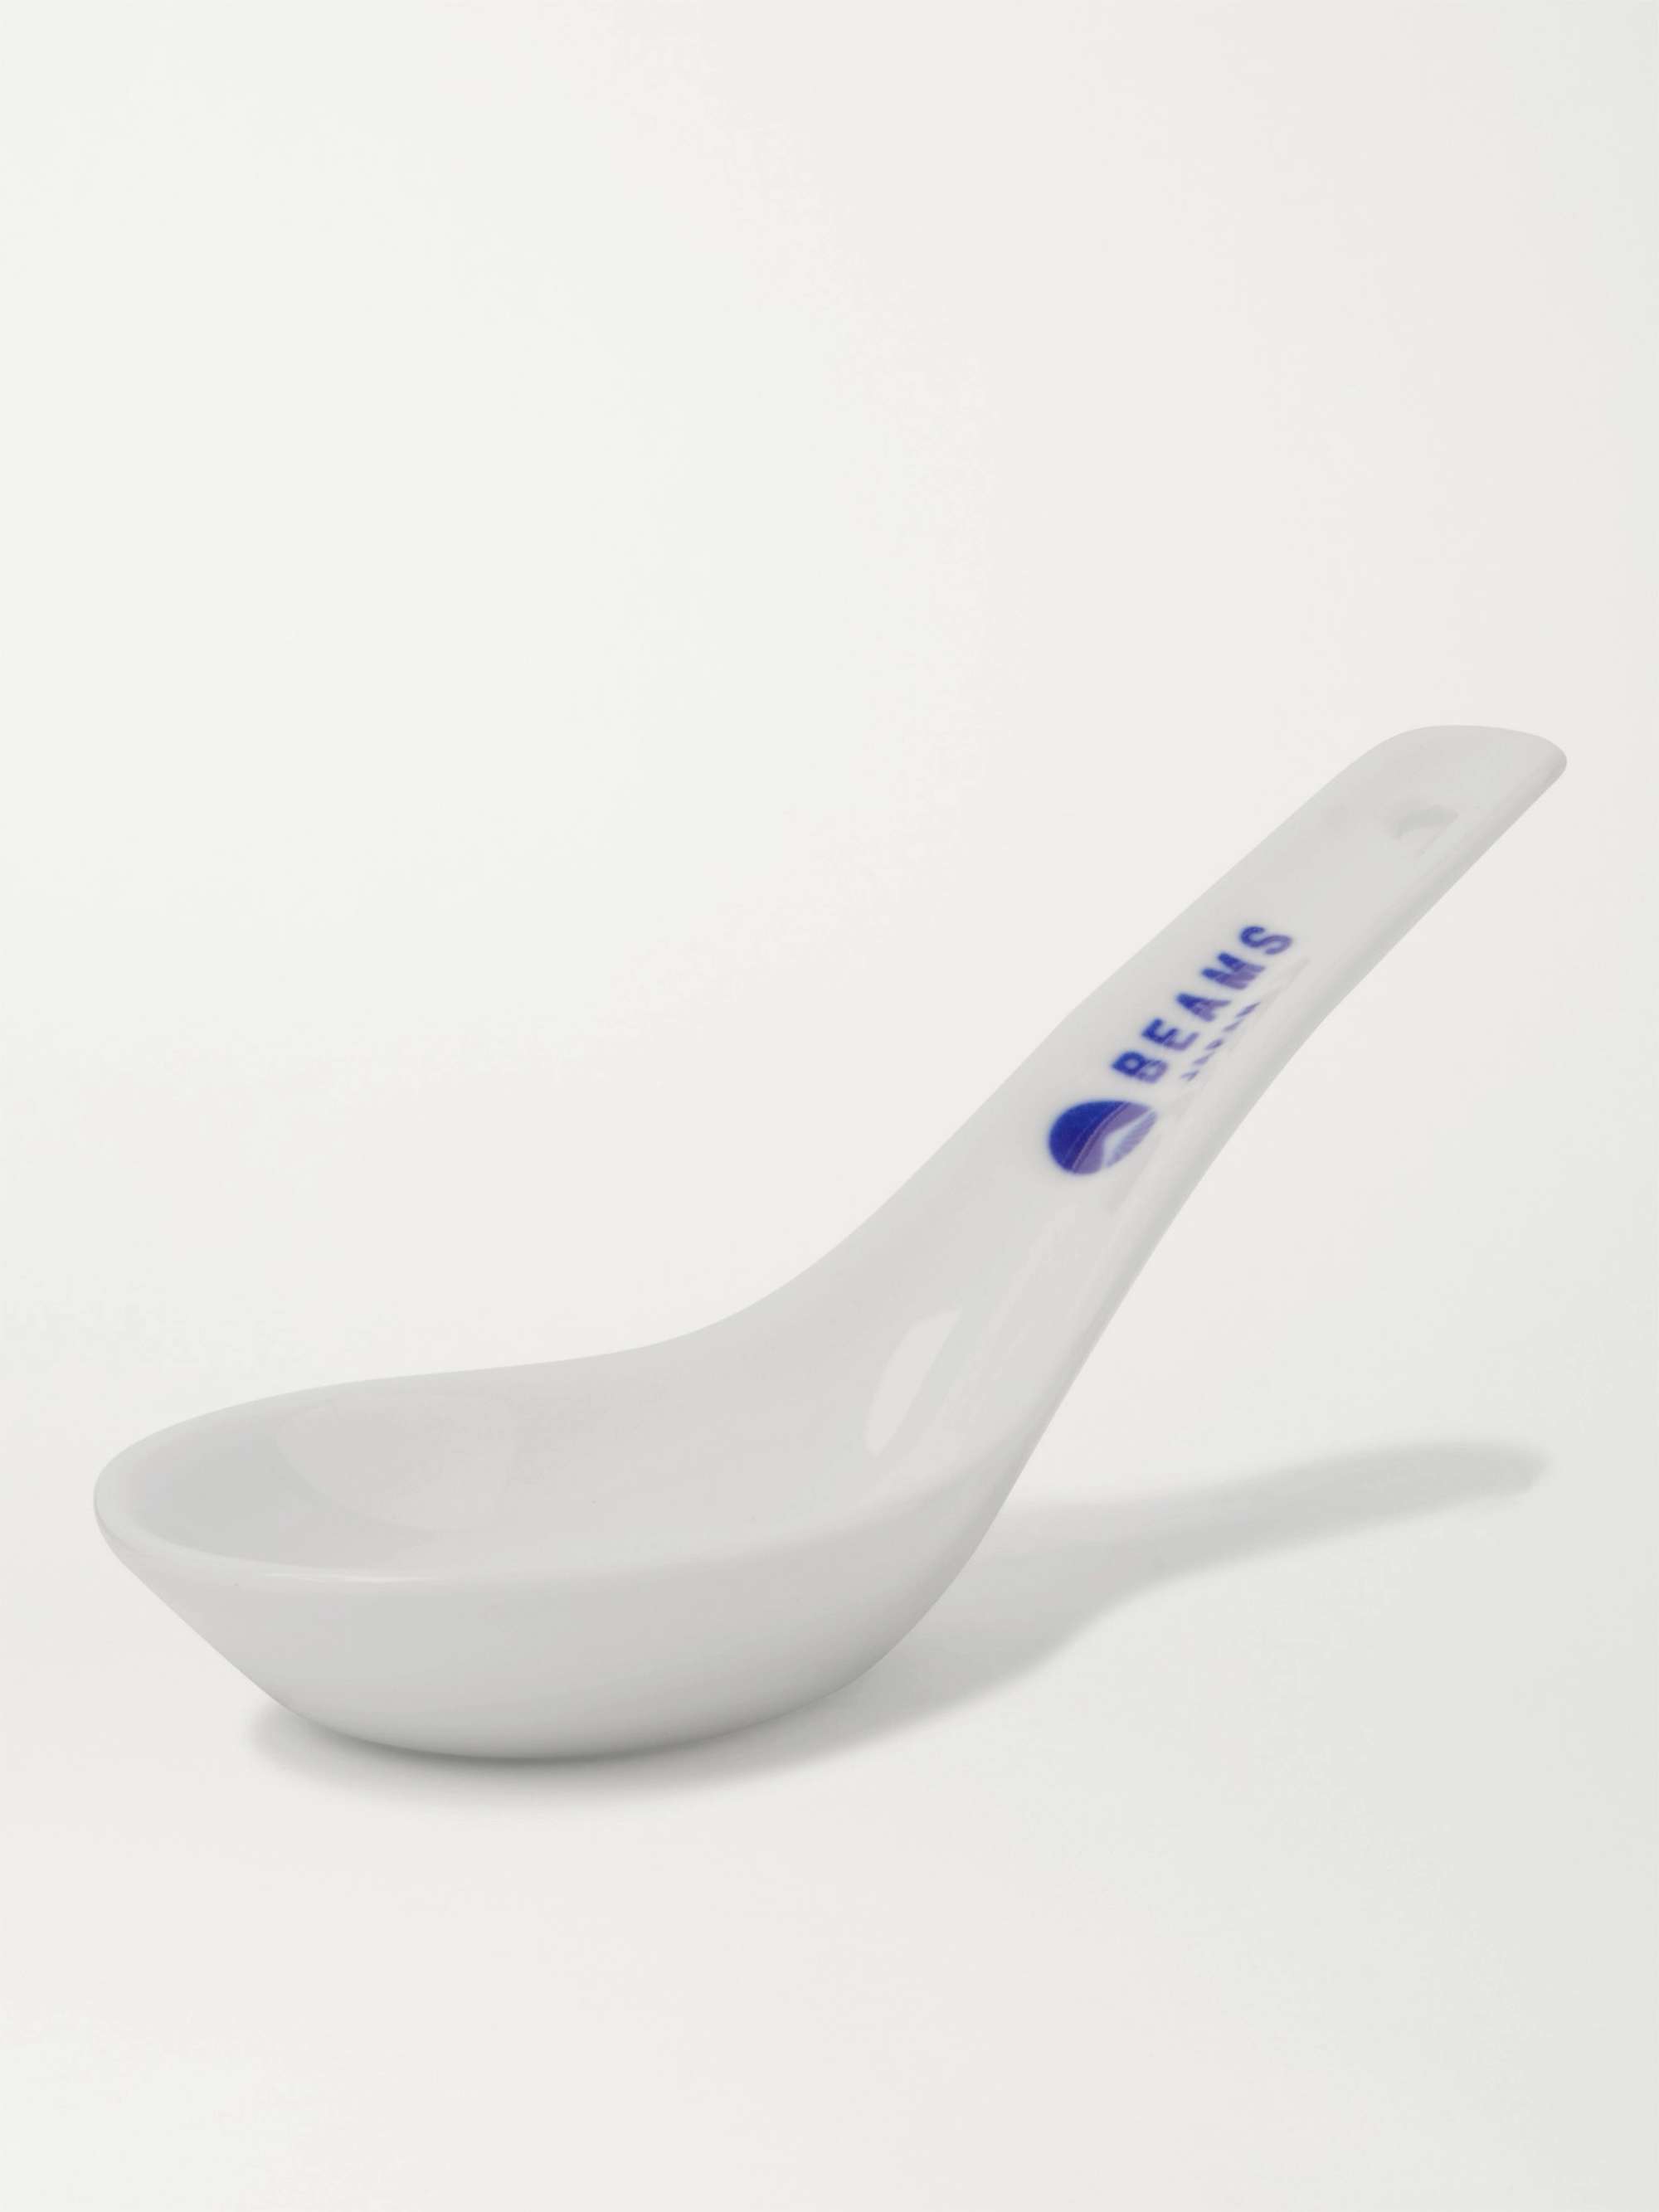 BY JAPAN + Beams Japan Ceramic Spoon